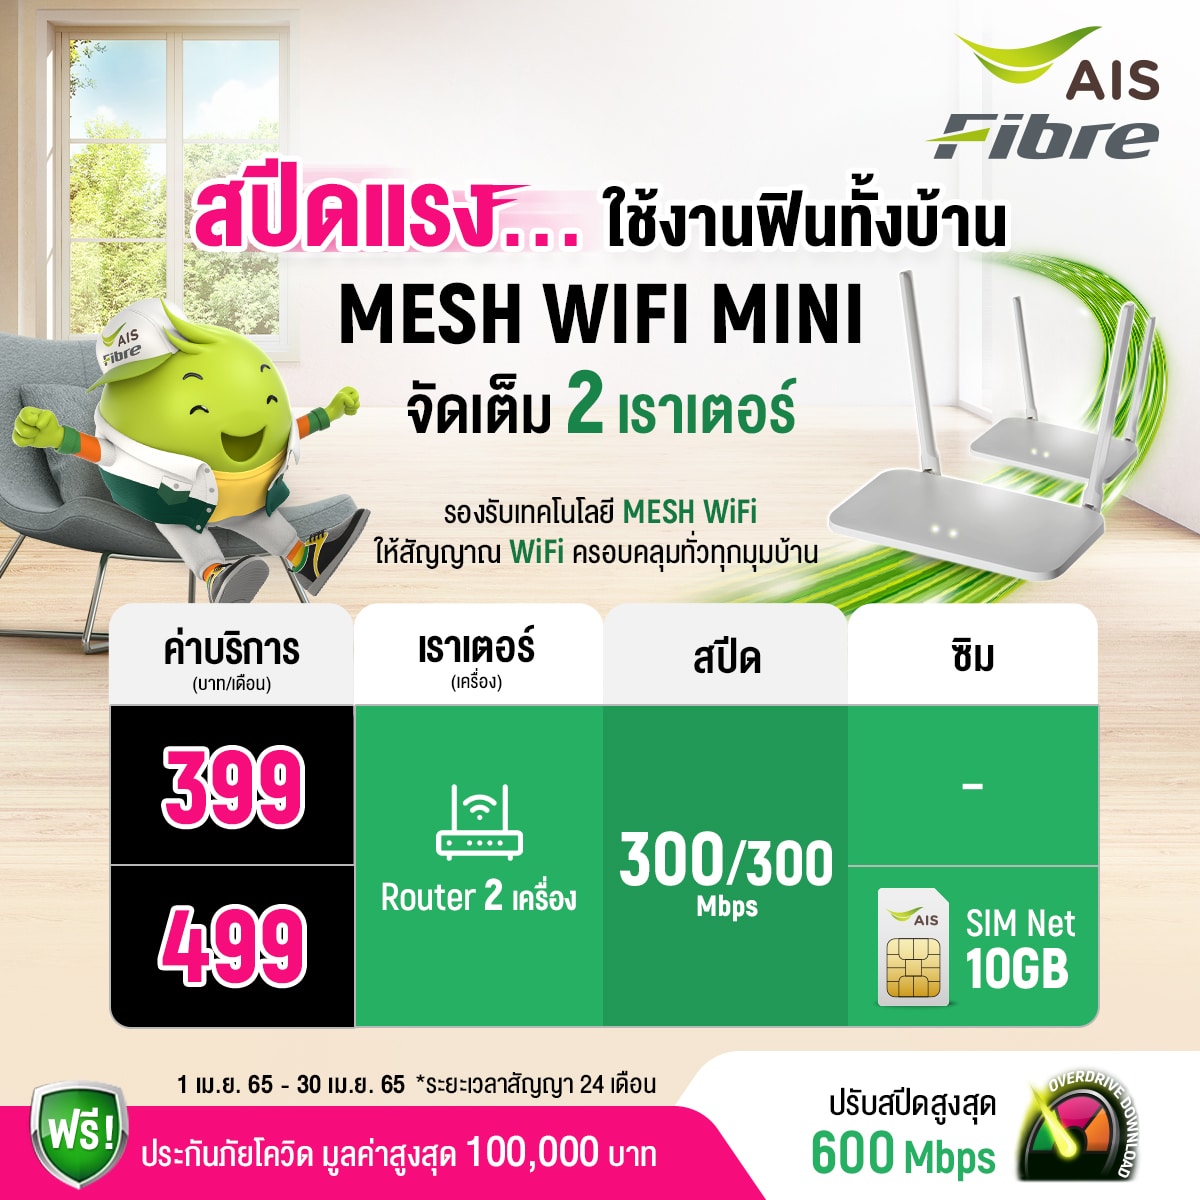 AIS Fiber mesh wifi mini AIS Fibre AIS Fibre อินเตอร์เน็ตบ้าน เอไอเอส 399 บาท